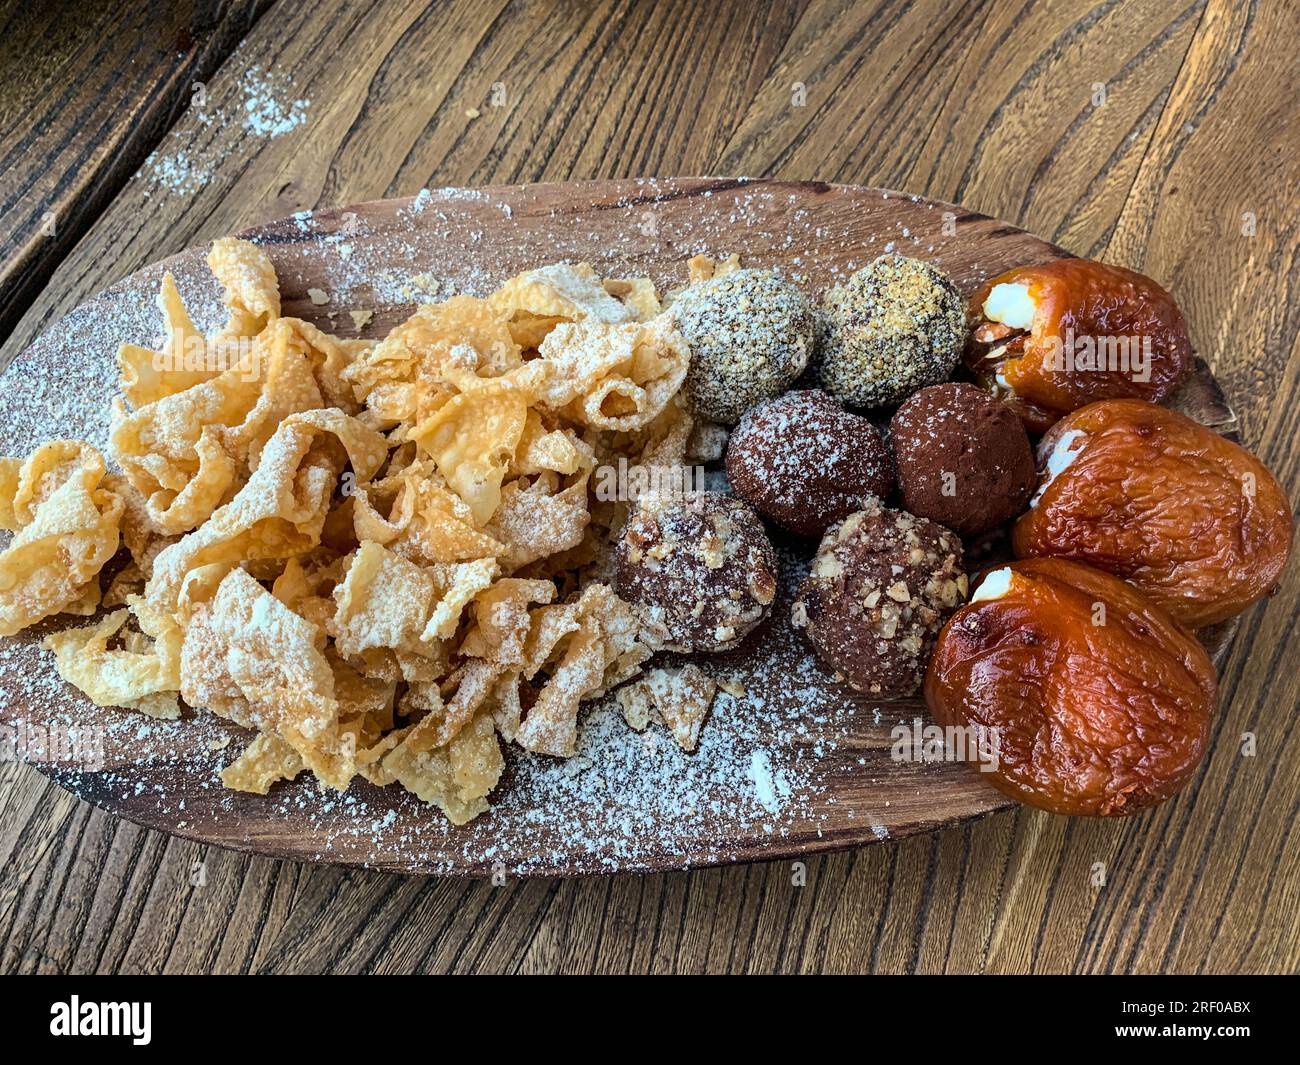 Kasachstan, Almaty. Verschiedene Süßigkeiten zum Nachtisch: Gebratene Nudeln, Trüffel (Schokolade mit Pecan), Aprikosen gefüllt mit Mascarpone-Frischkäse Stockfoto